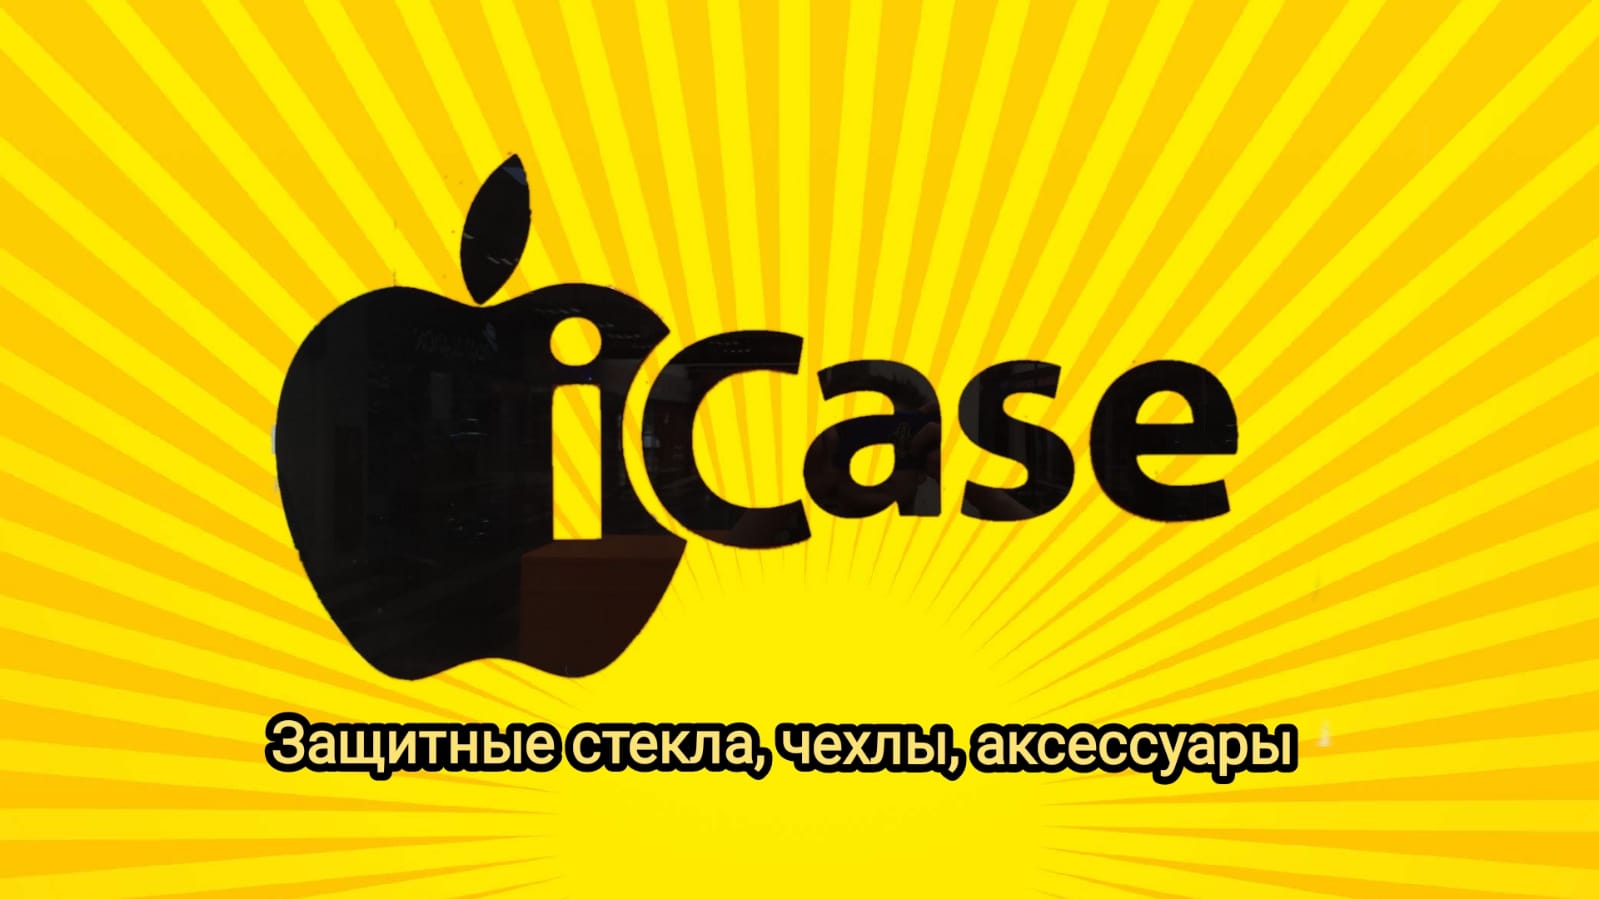 Iphone Case